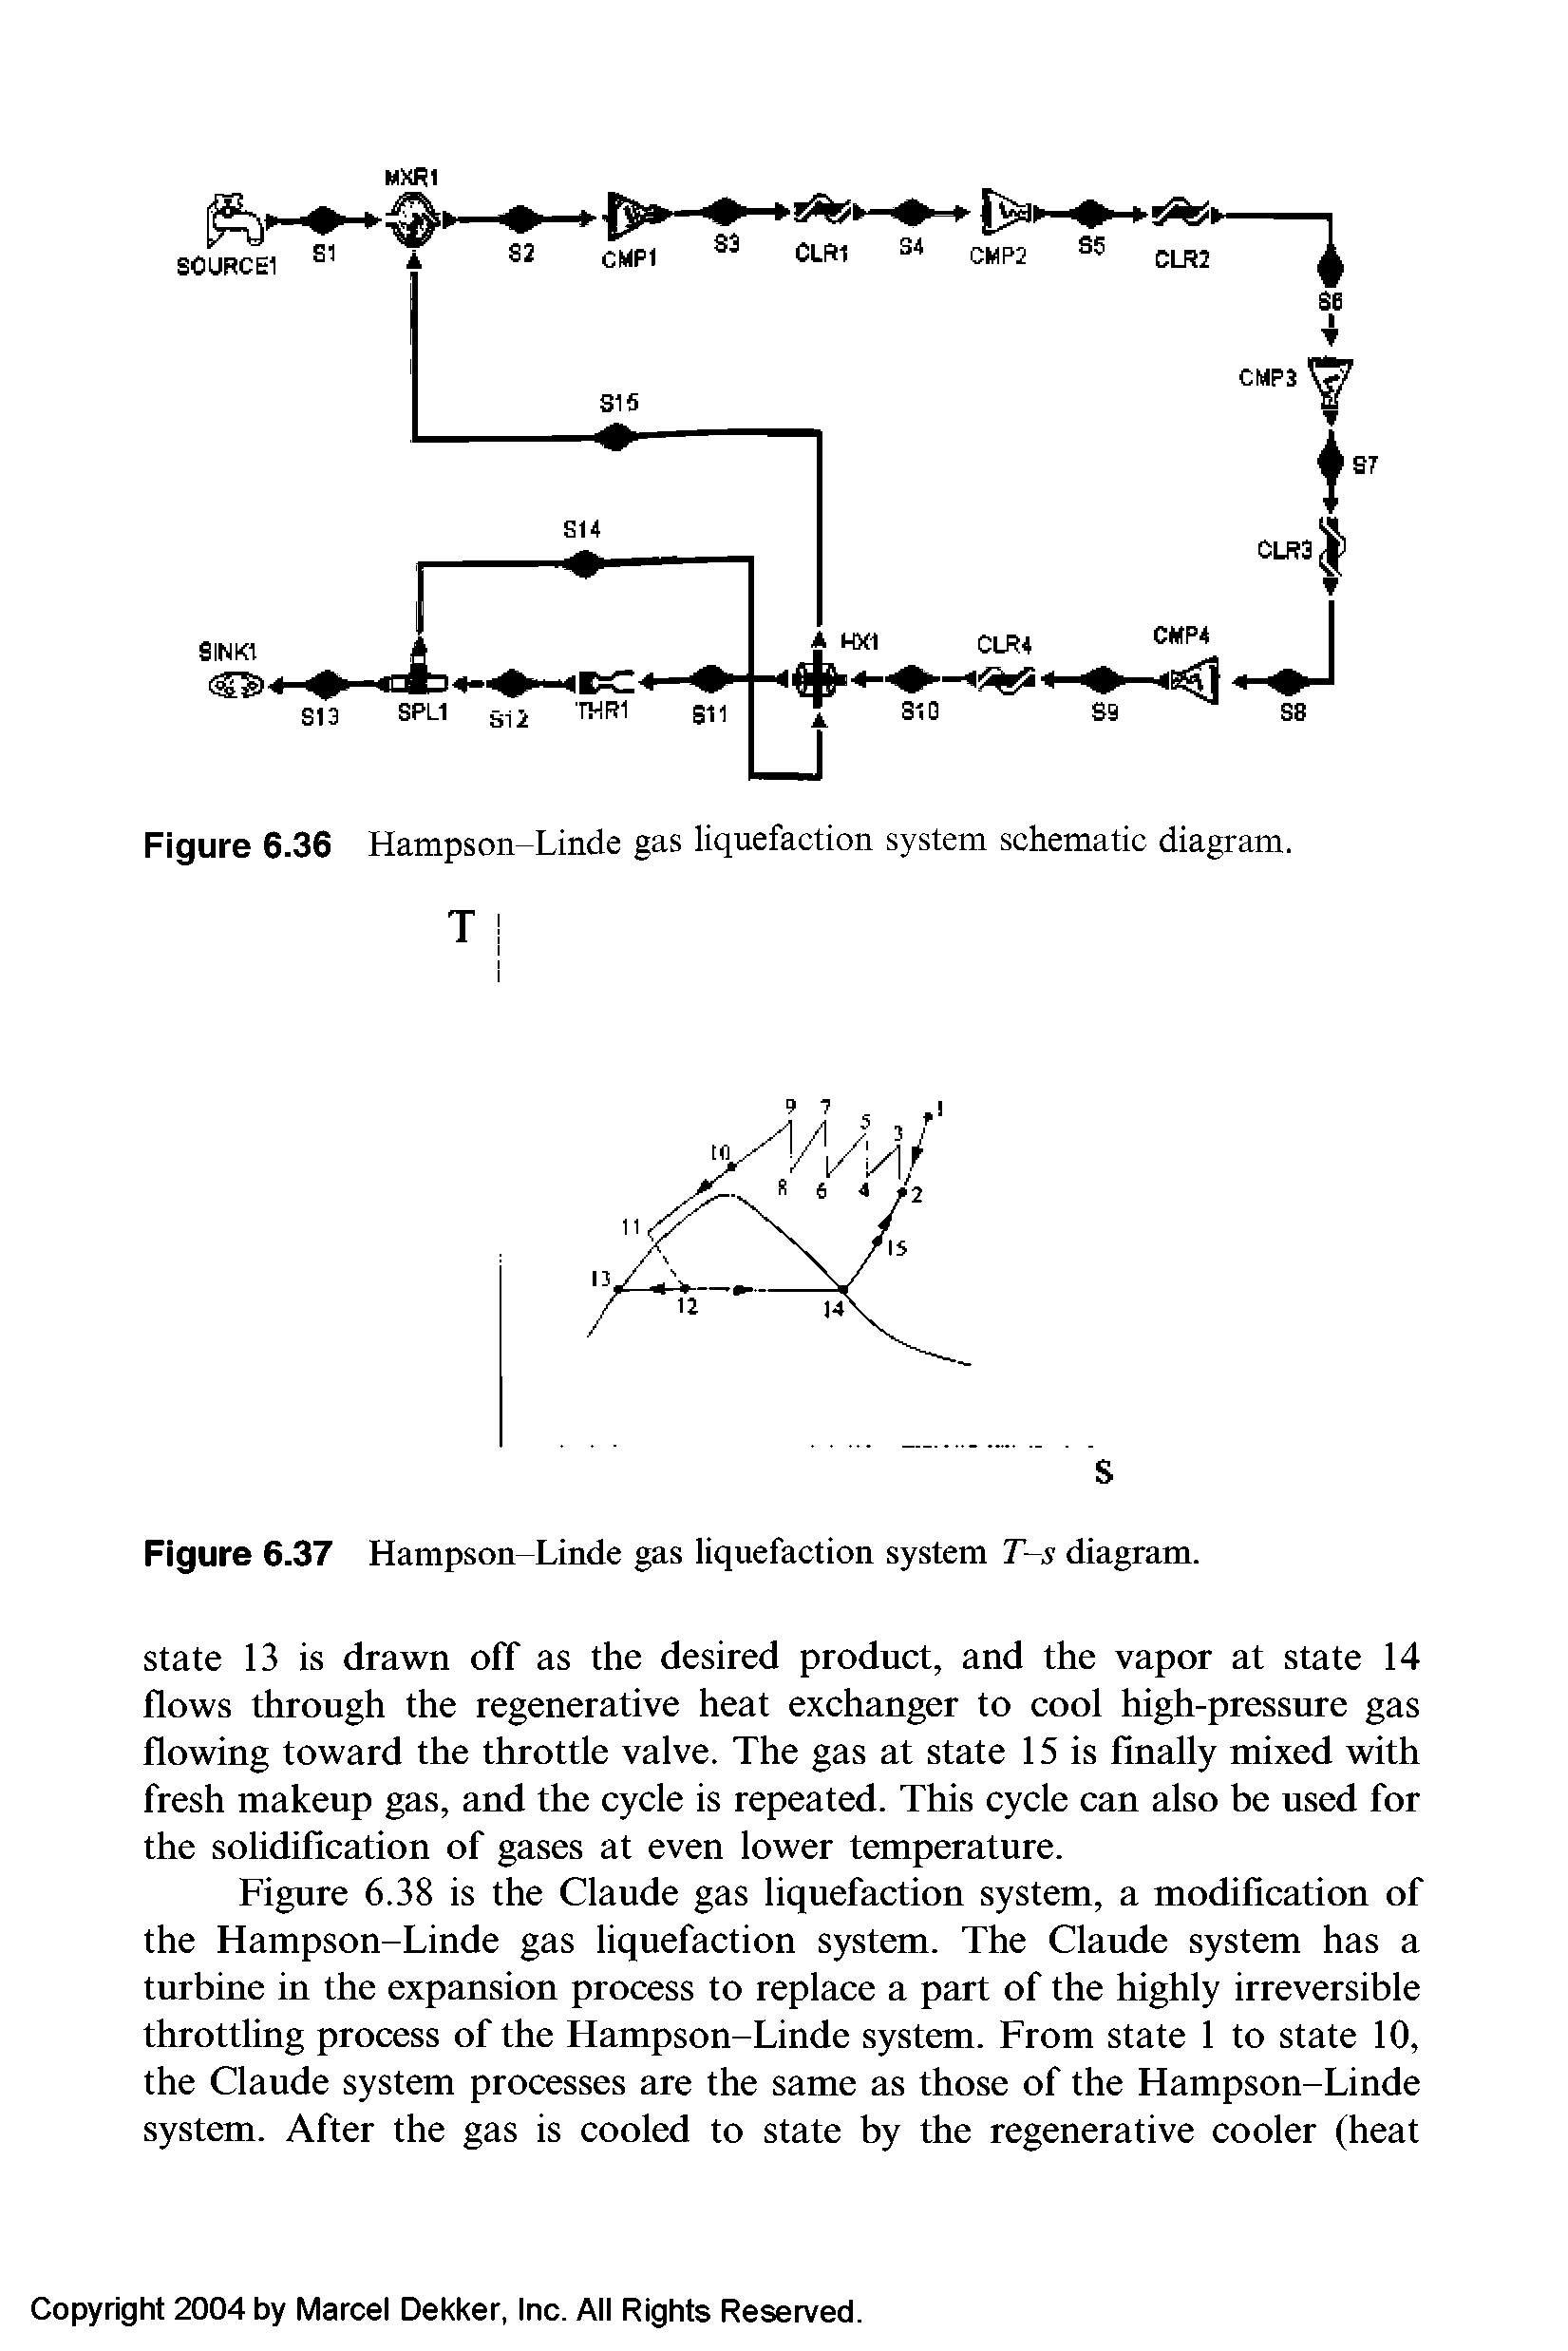 Figure 6.36 Hampson-Linde gas liquefaction system schematic diagram.